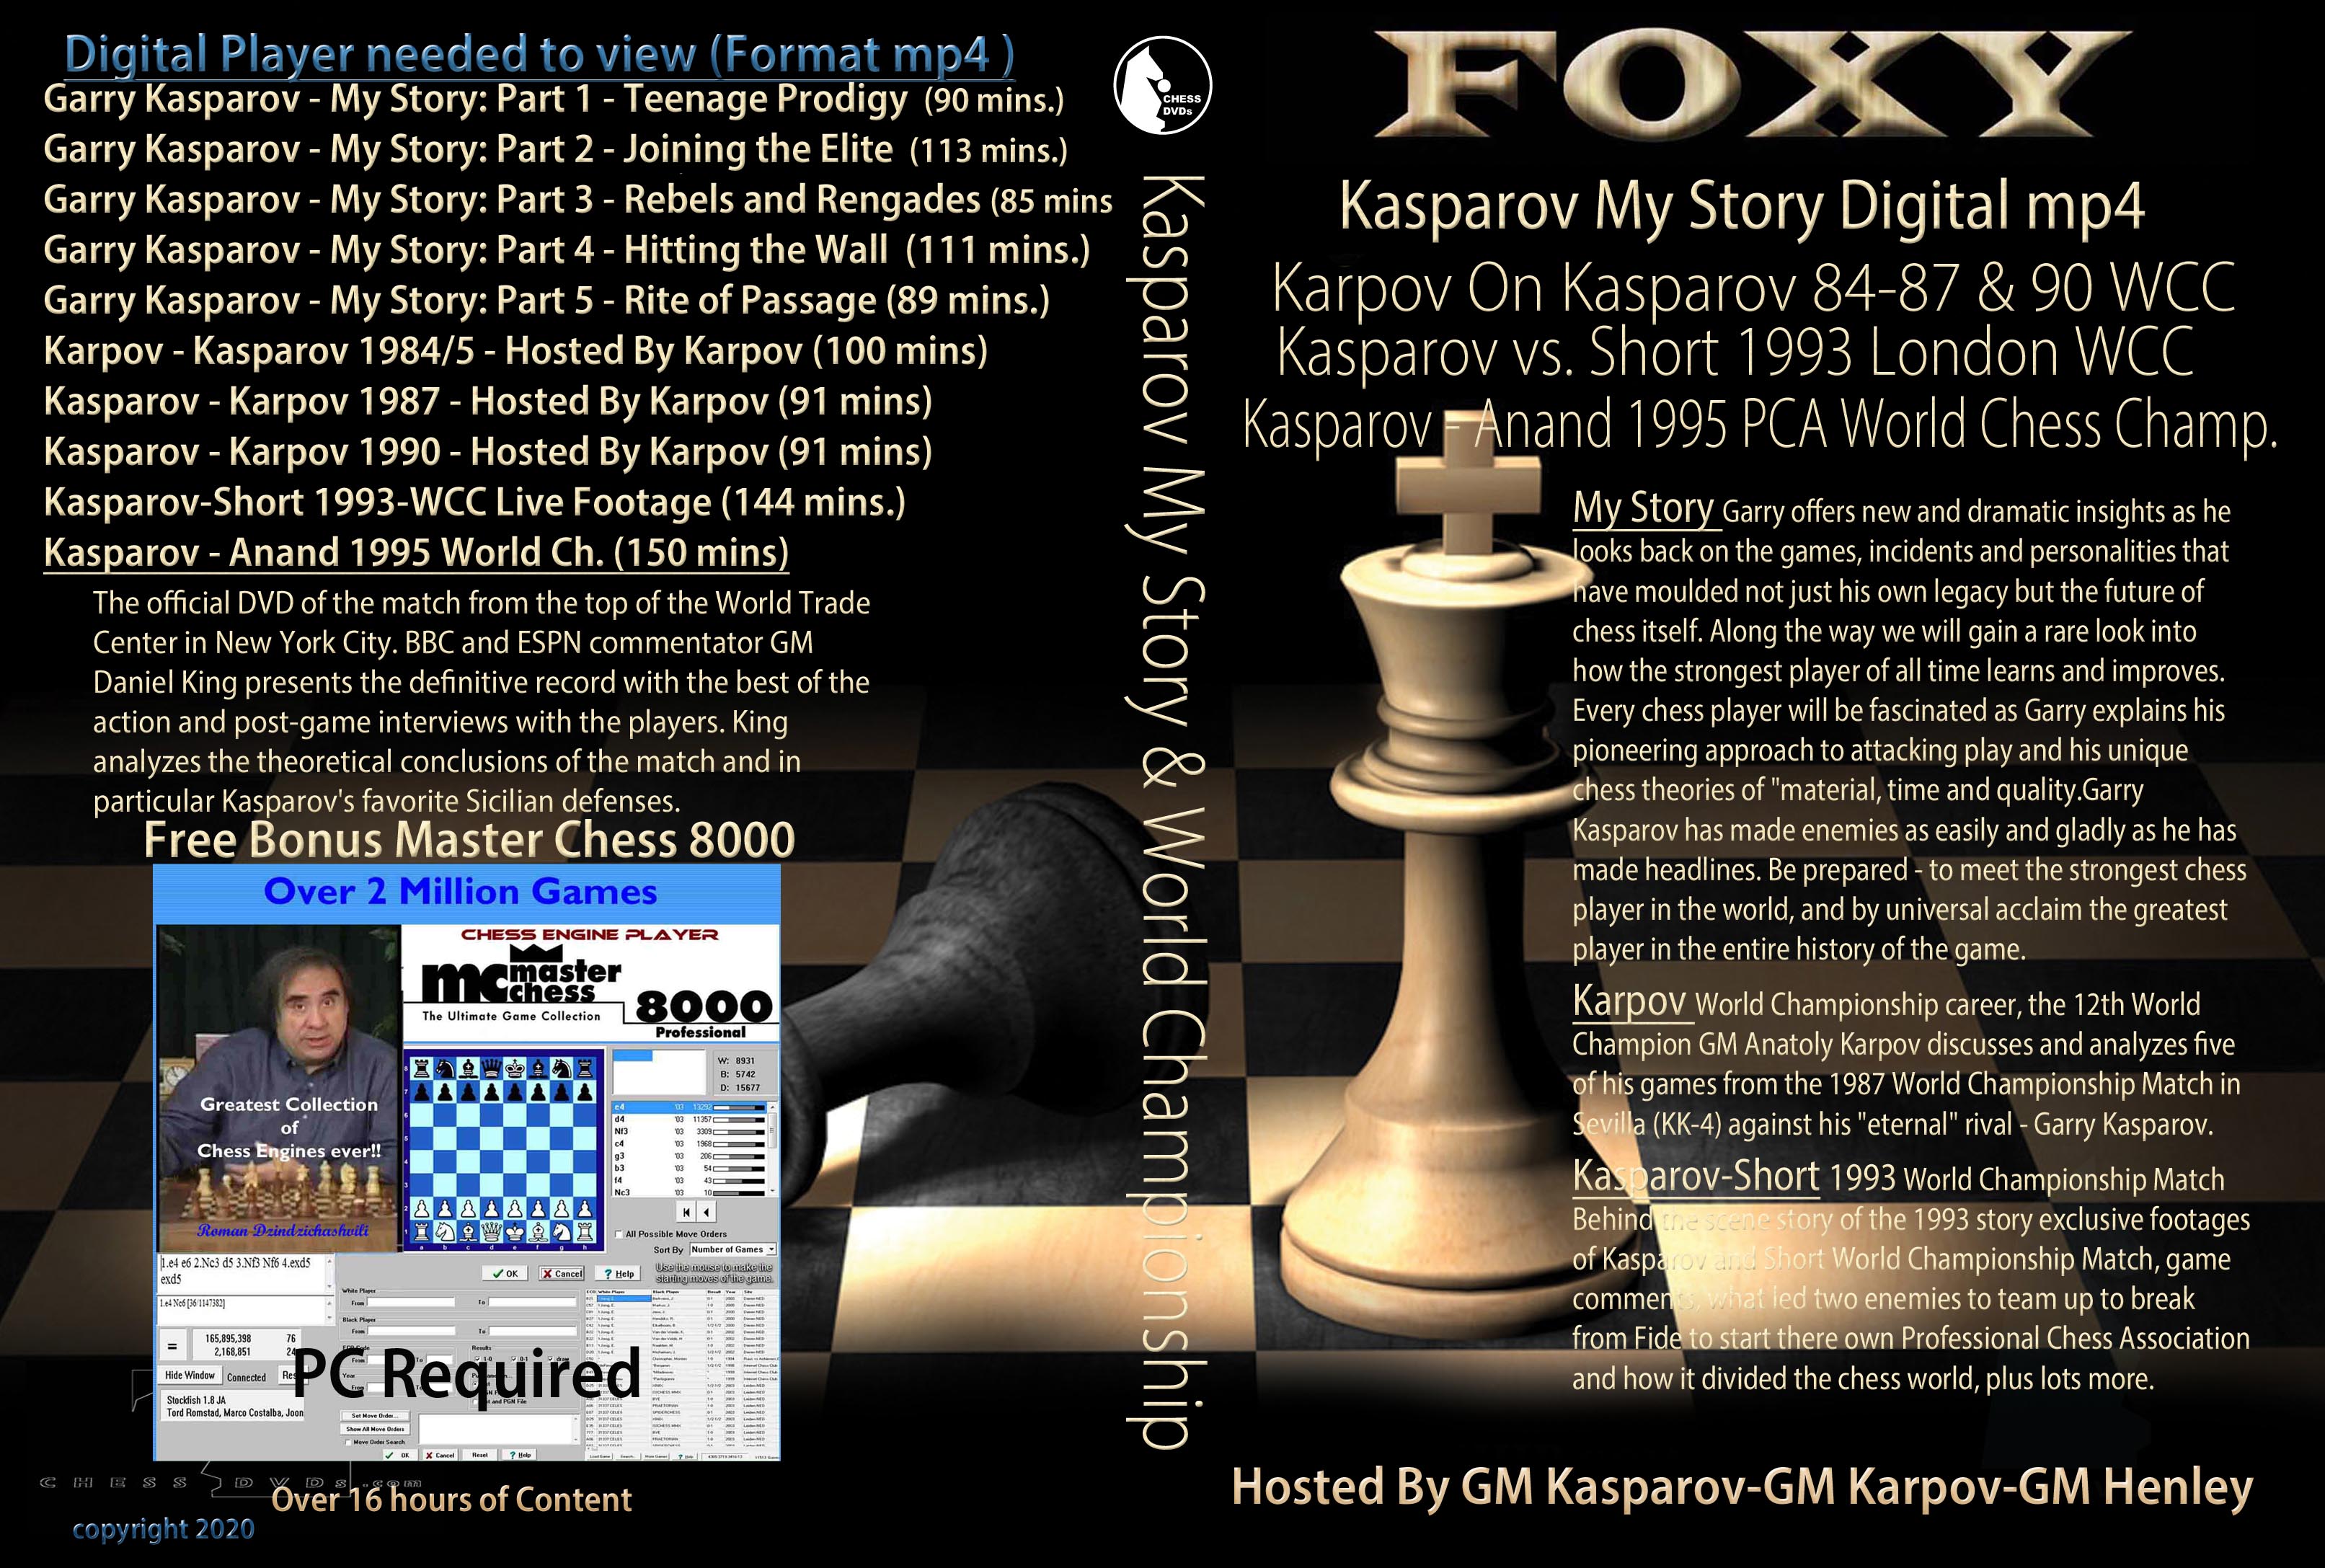 Karpov On Kasparov 84-87 &90 WCC Anand 1995 PCA World Chess CHam